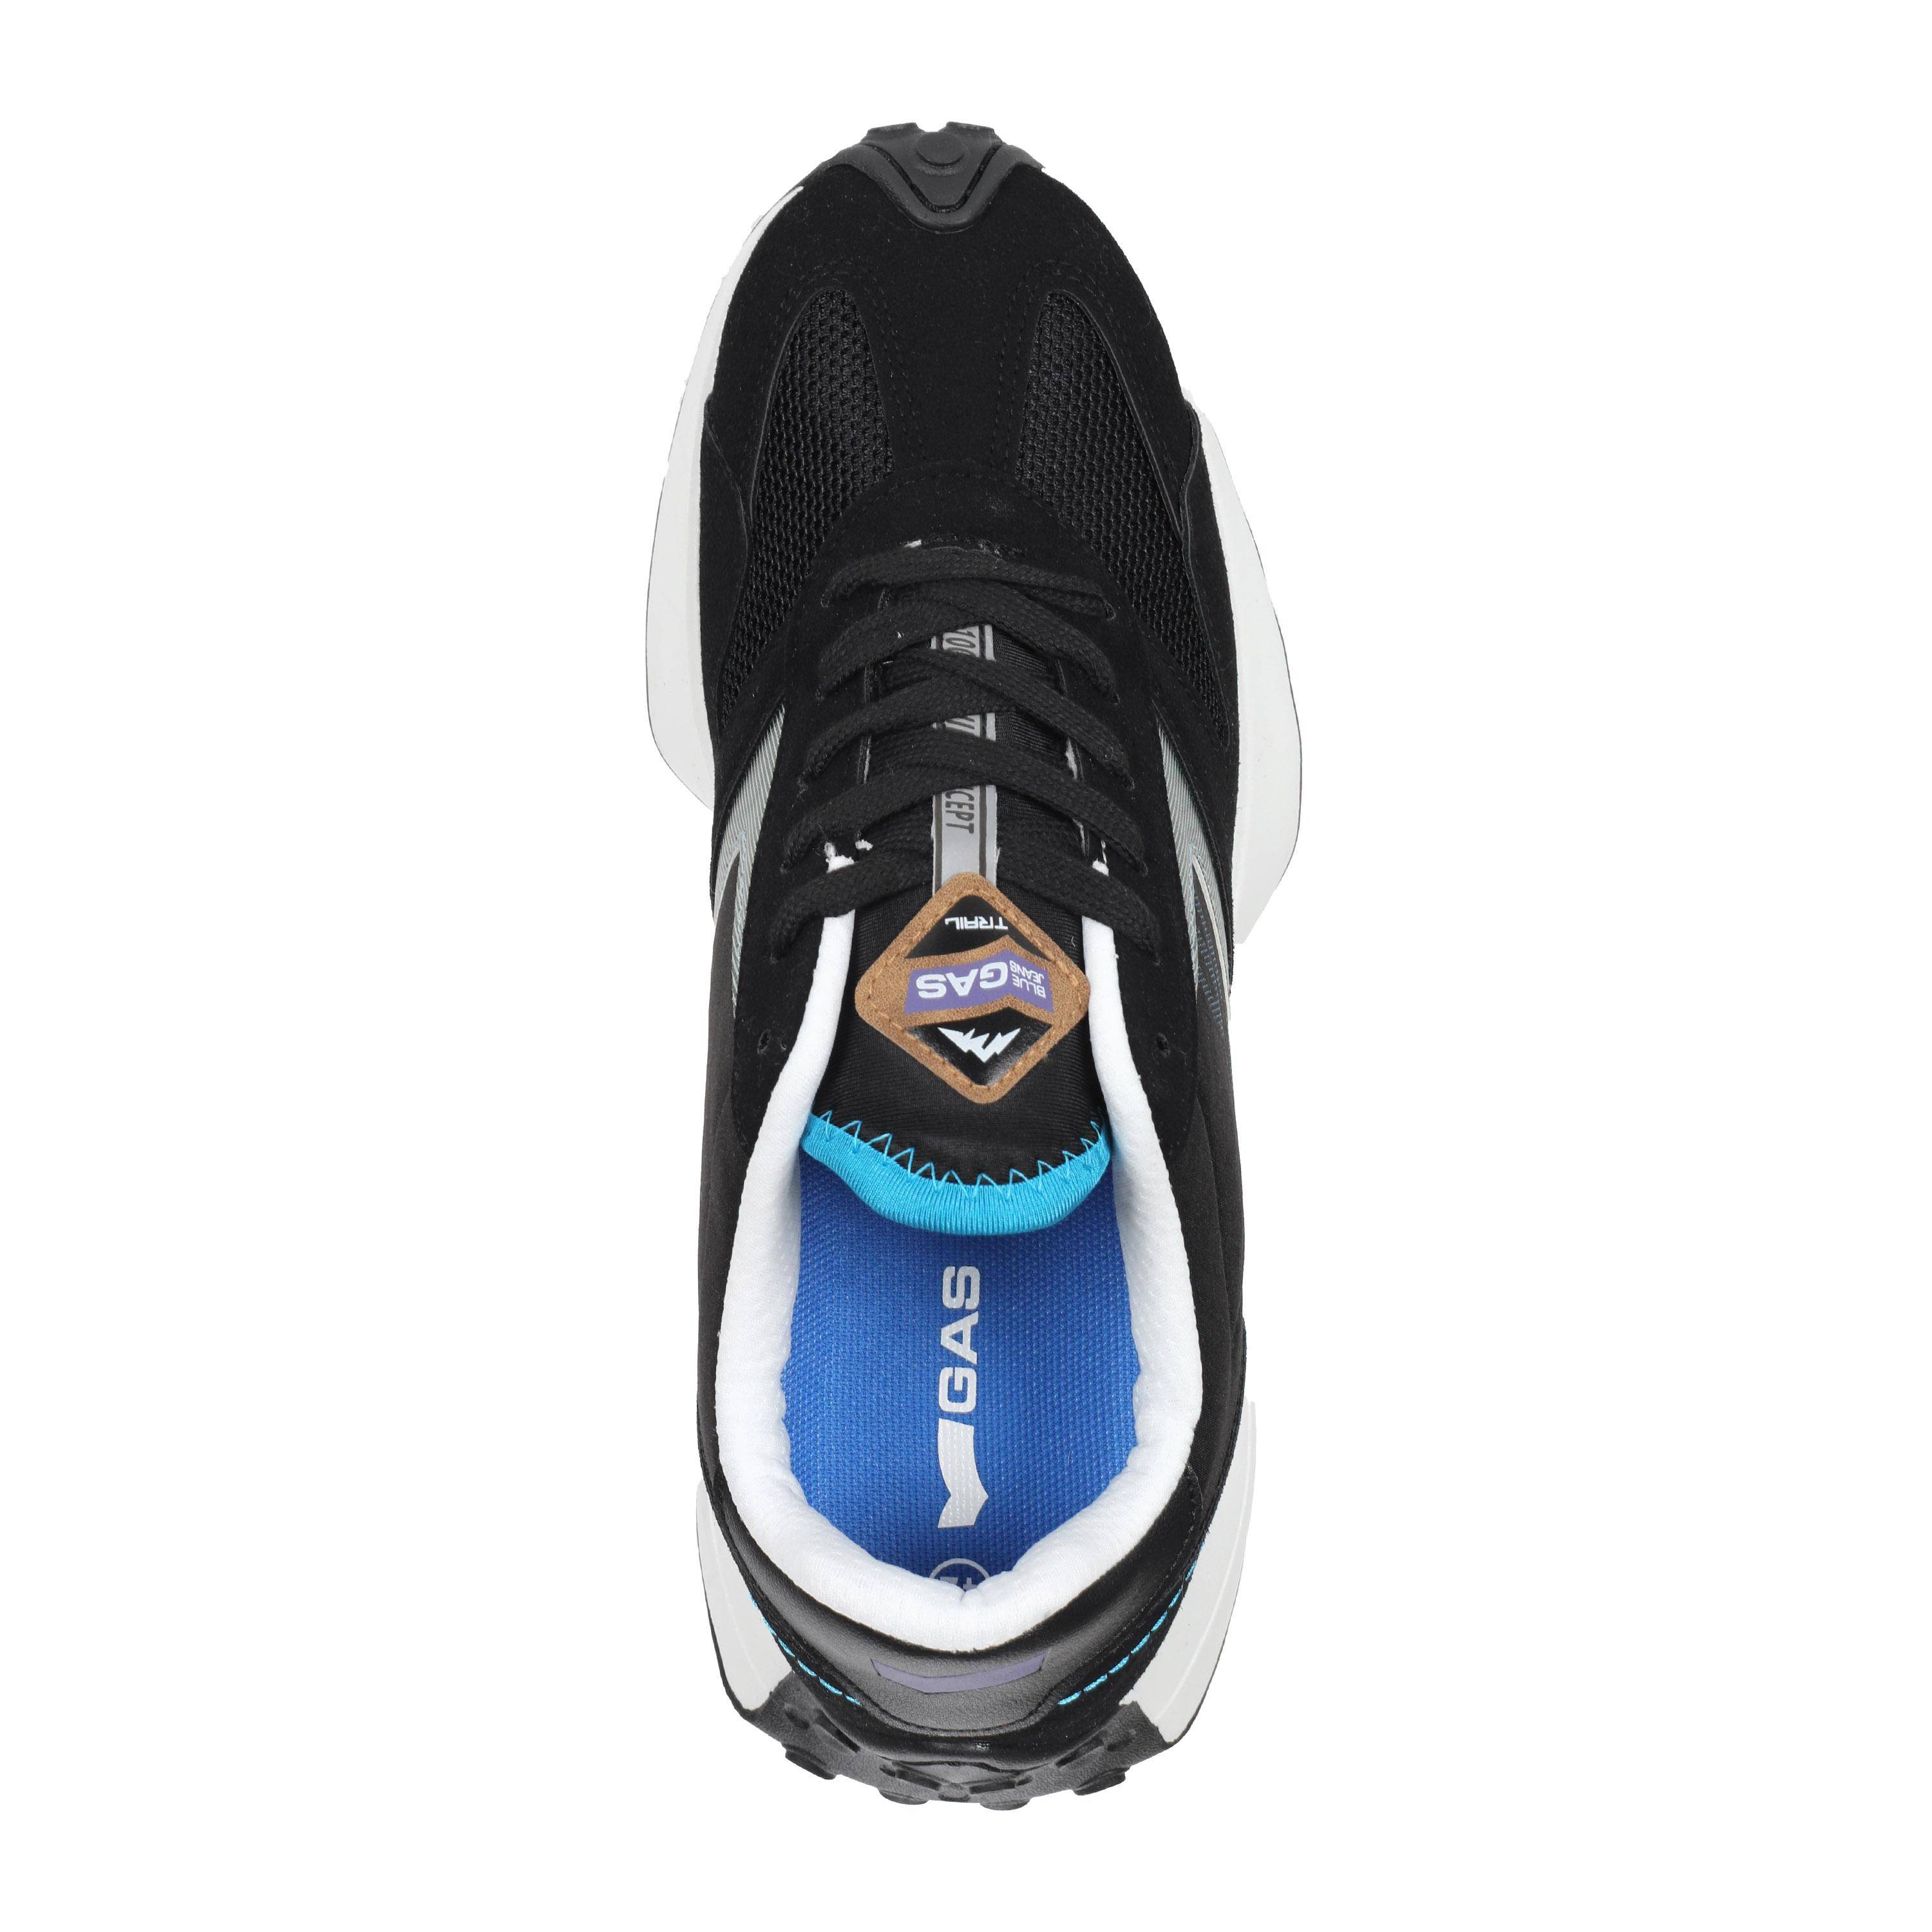 Мужские кроссовки GAS, черные, цвет черный, размер 44 - фото 4